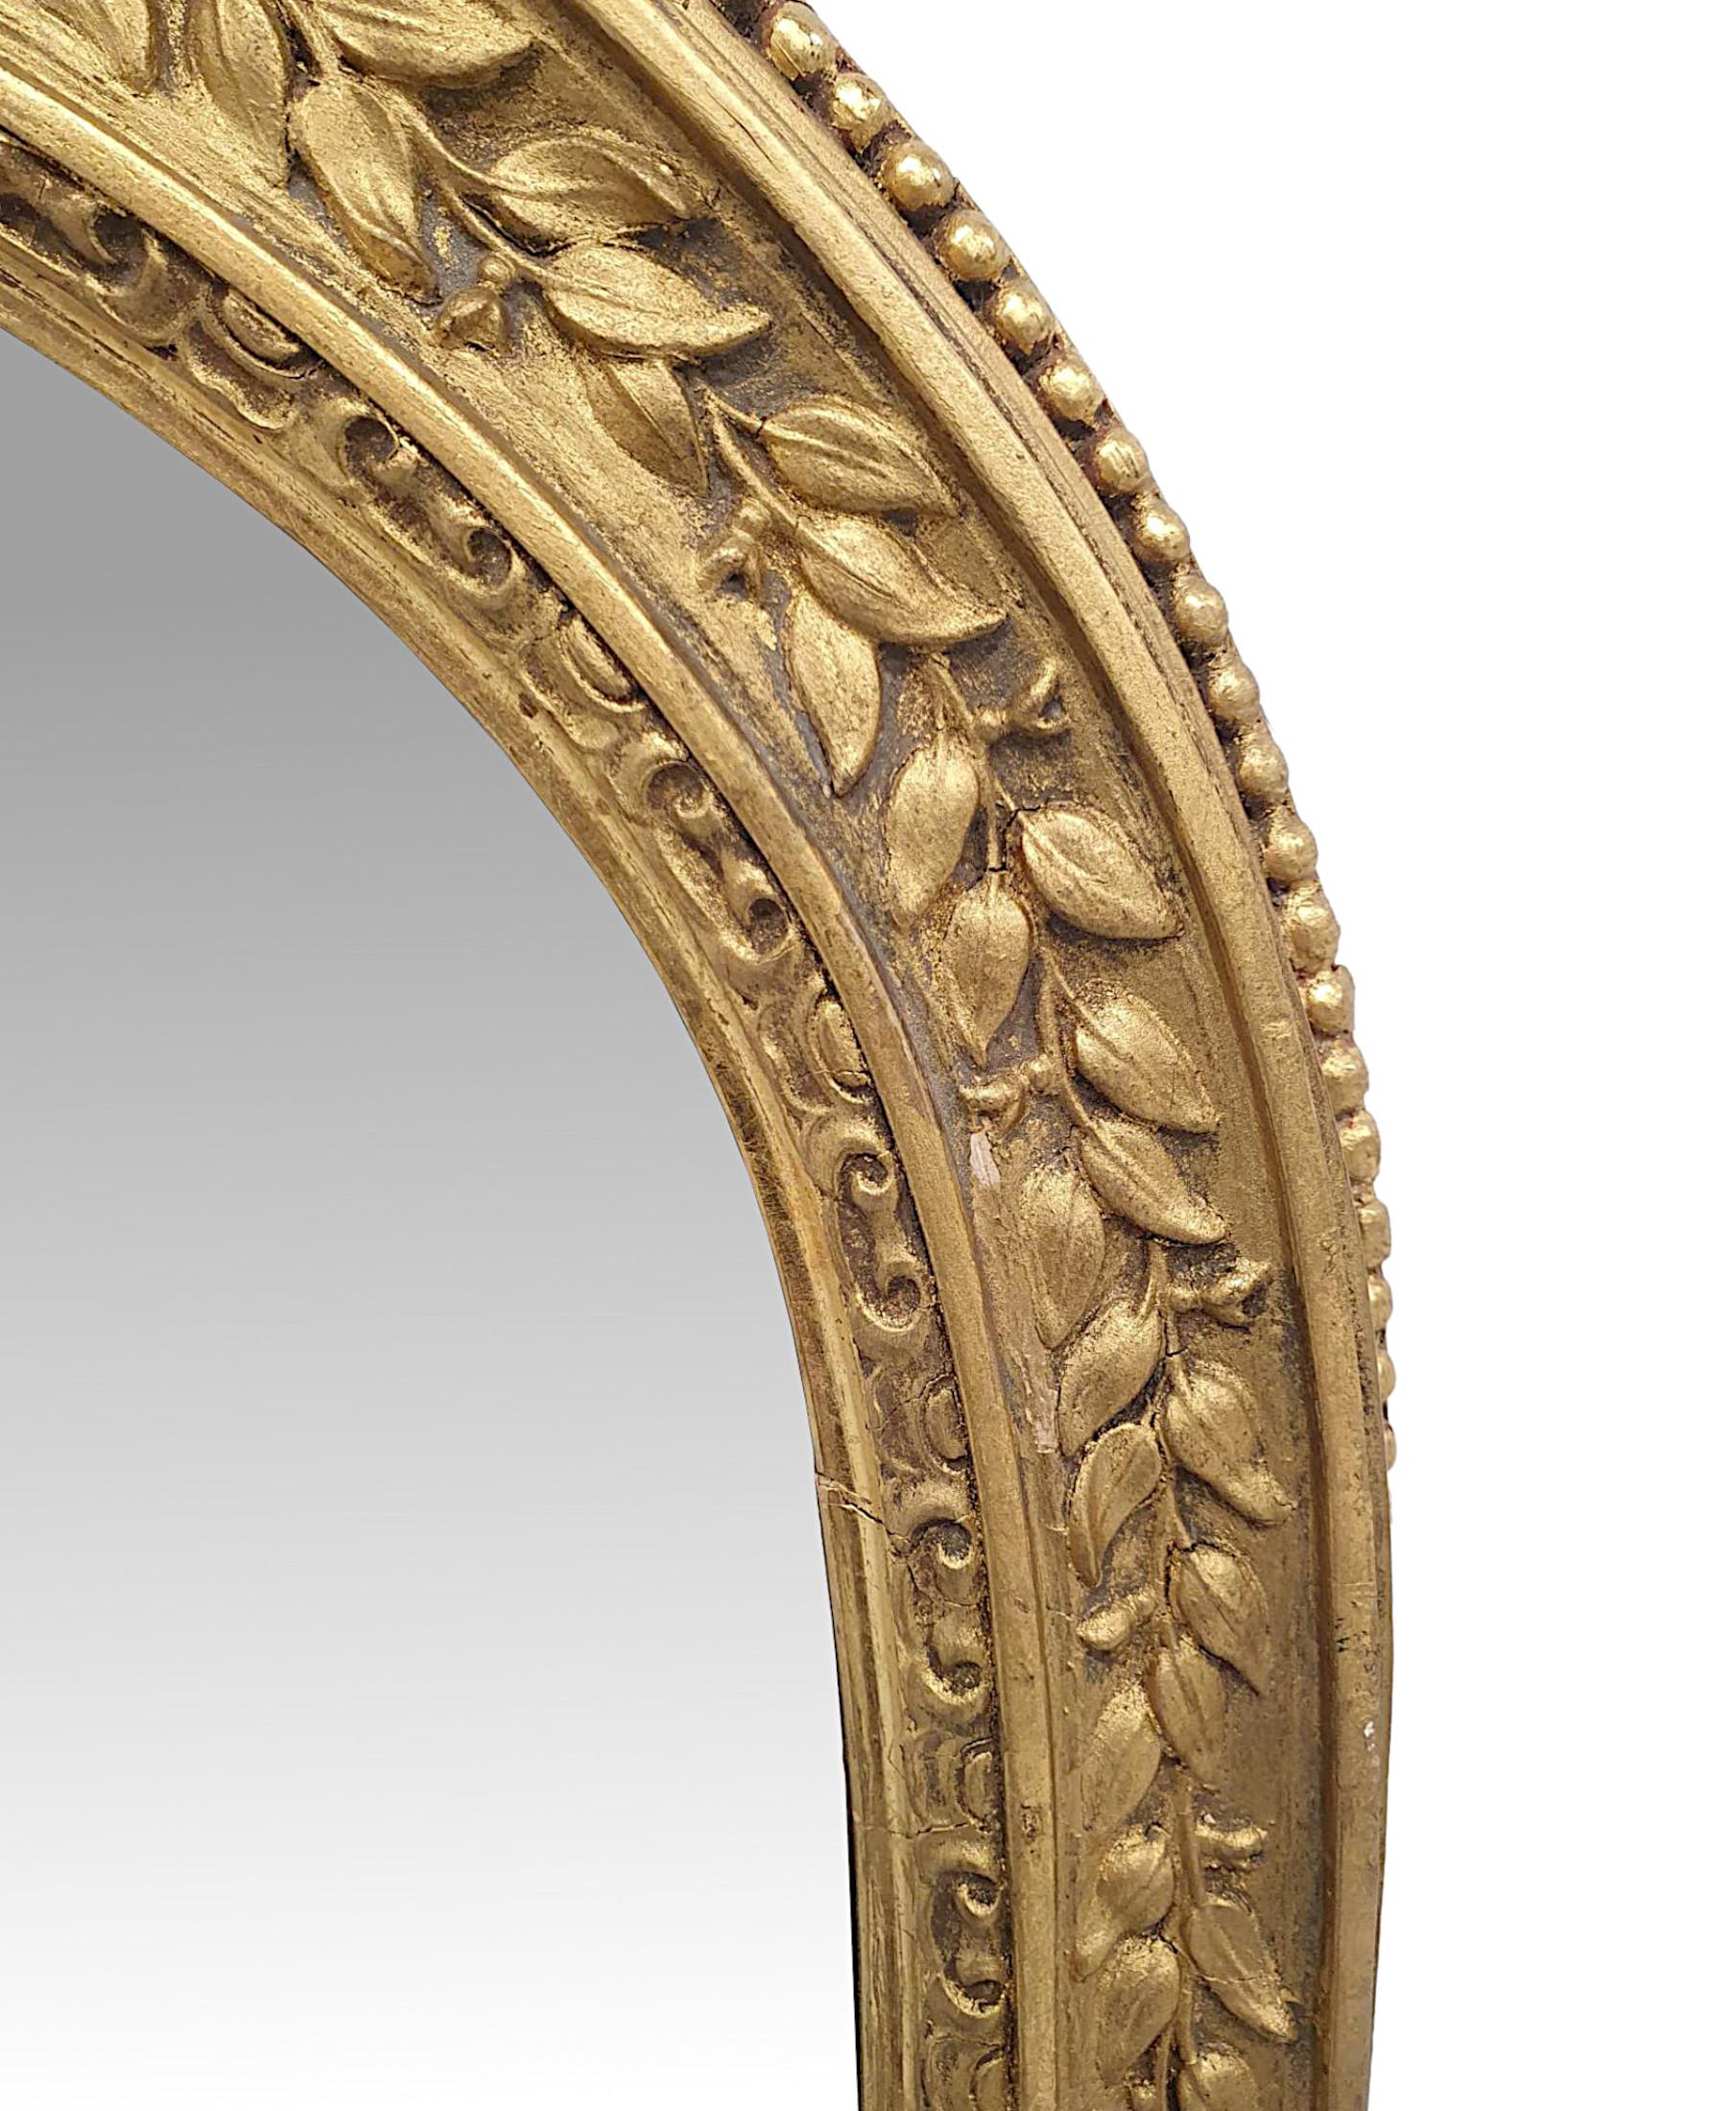 Ein sehr seltener vergoldeter Ankleide- oder Anlegespiegel des 19. Jahrhunderts mit schmalen und hohen Proportionen und außergewöhnlicher Qualität.  Die Spiegelglasplatte befindet sich in einem fein handgeschnitzten, profilierten und geriffelten